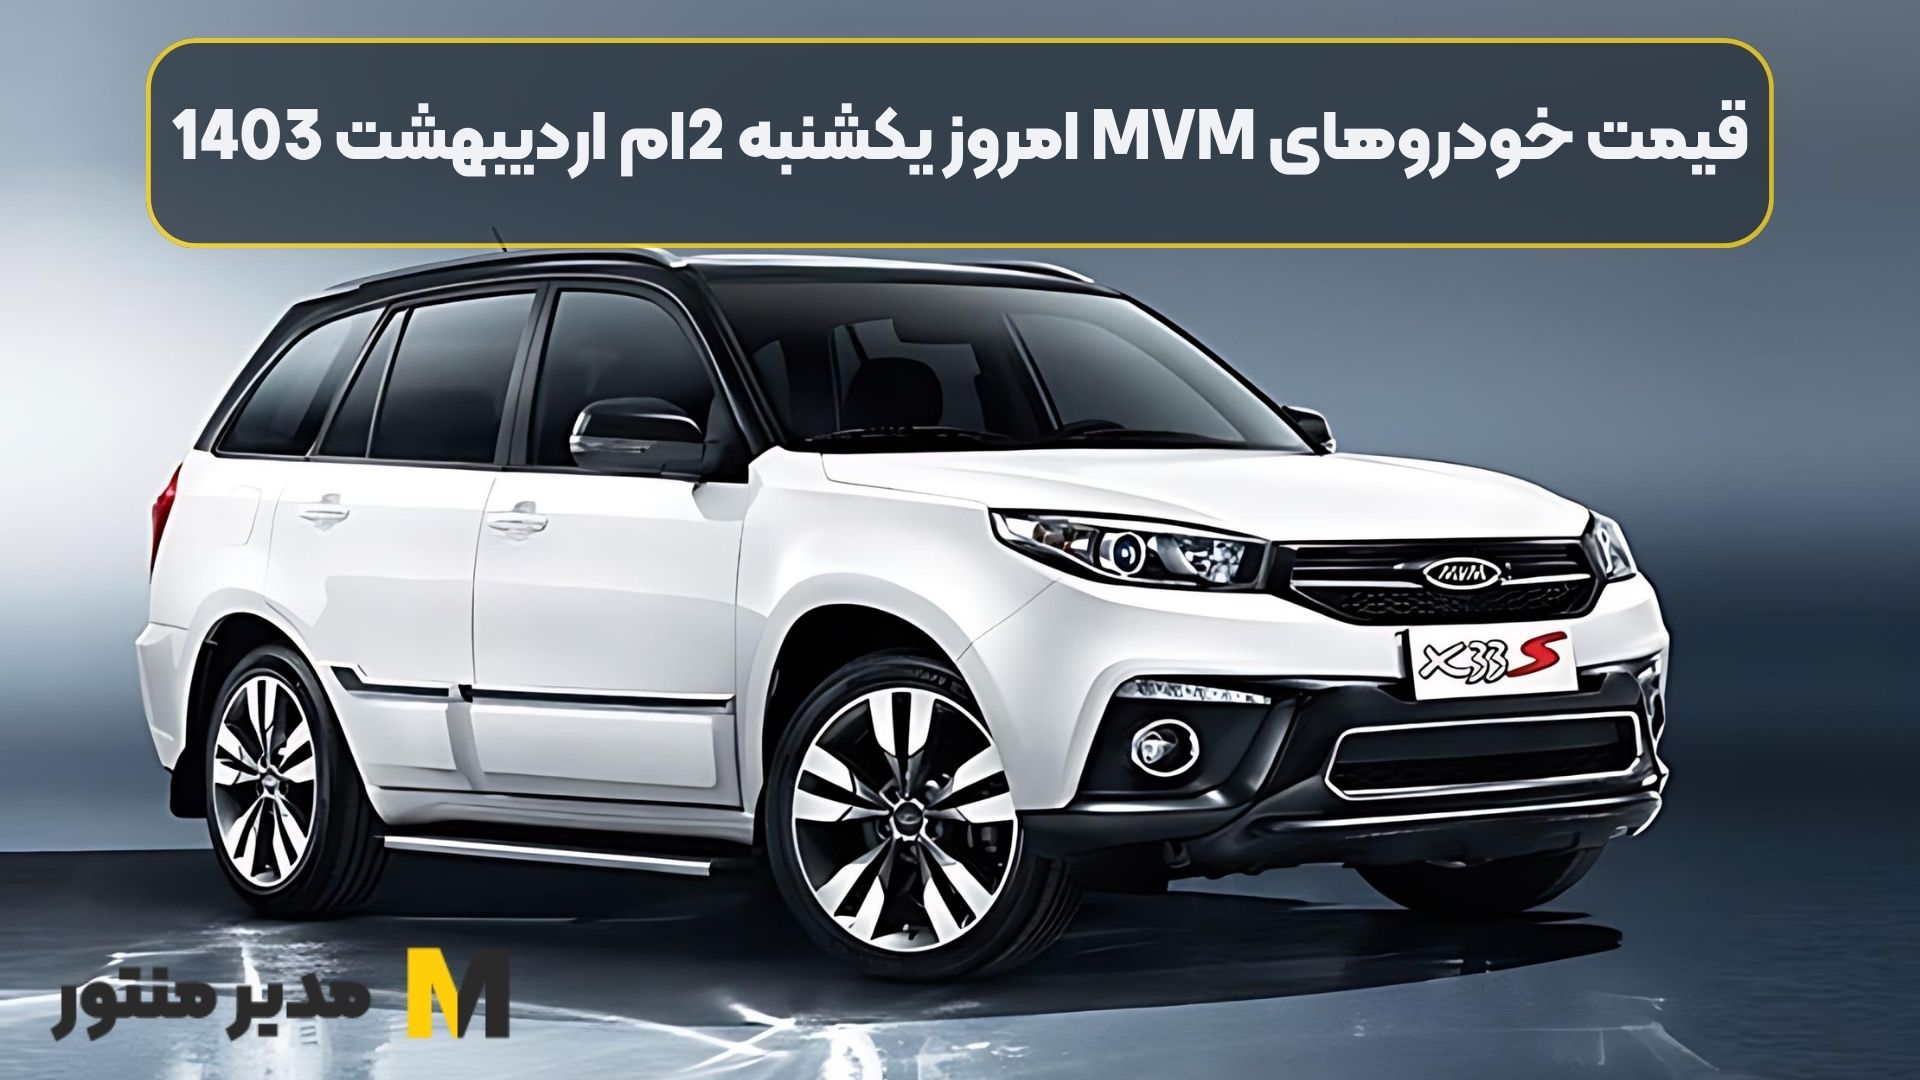 قیمت خودروهای MVM امروز یکشنبه 2ام اردیبهشت 1403